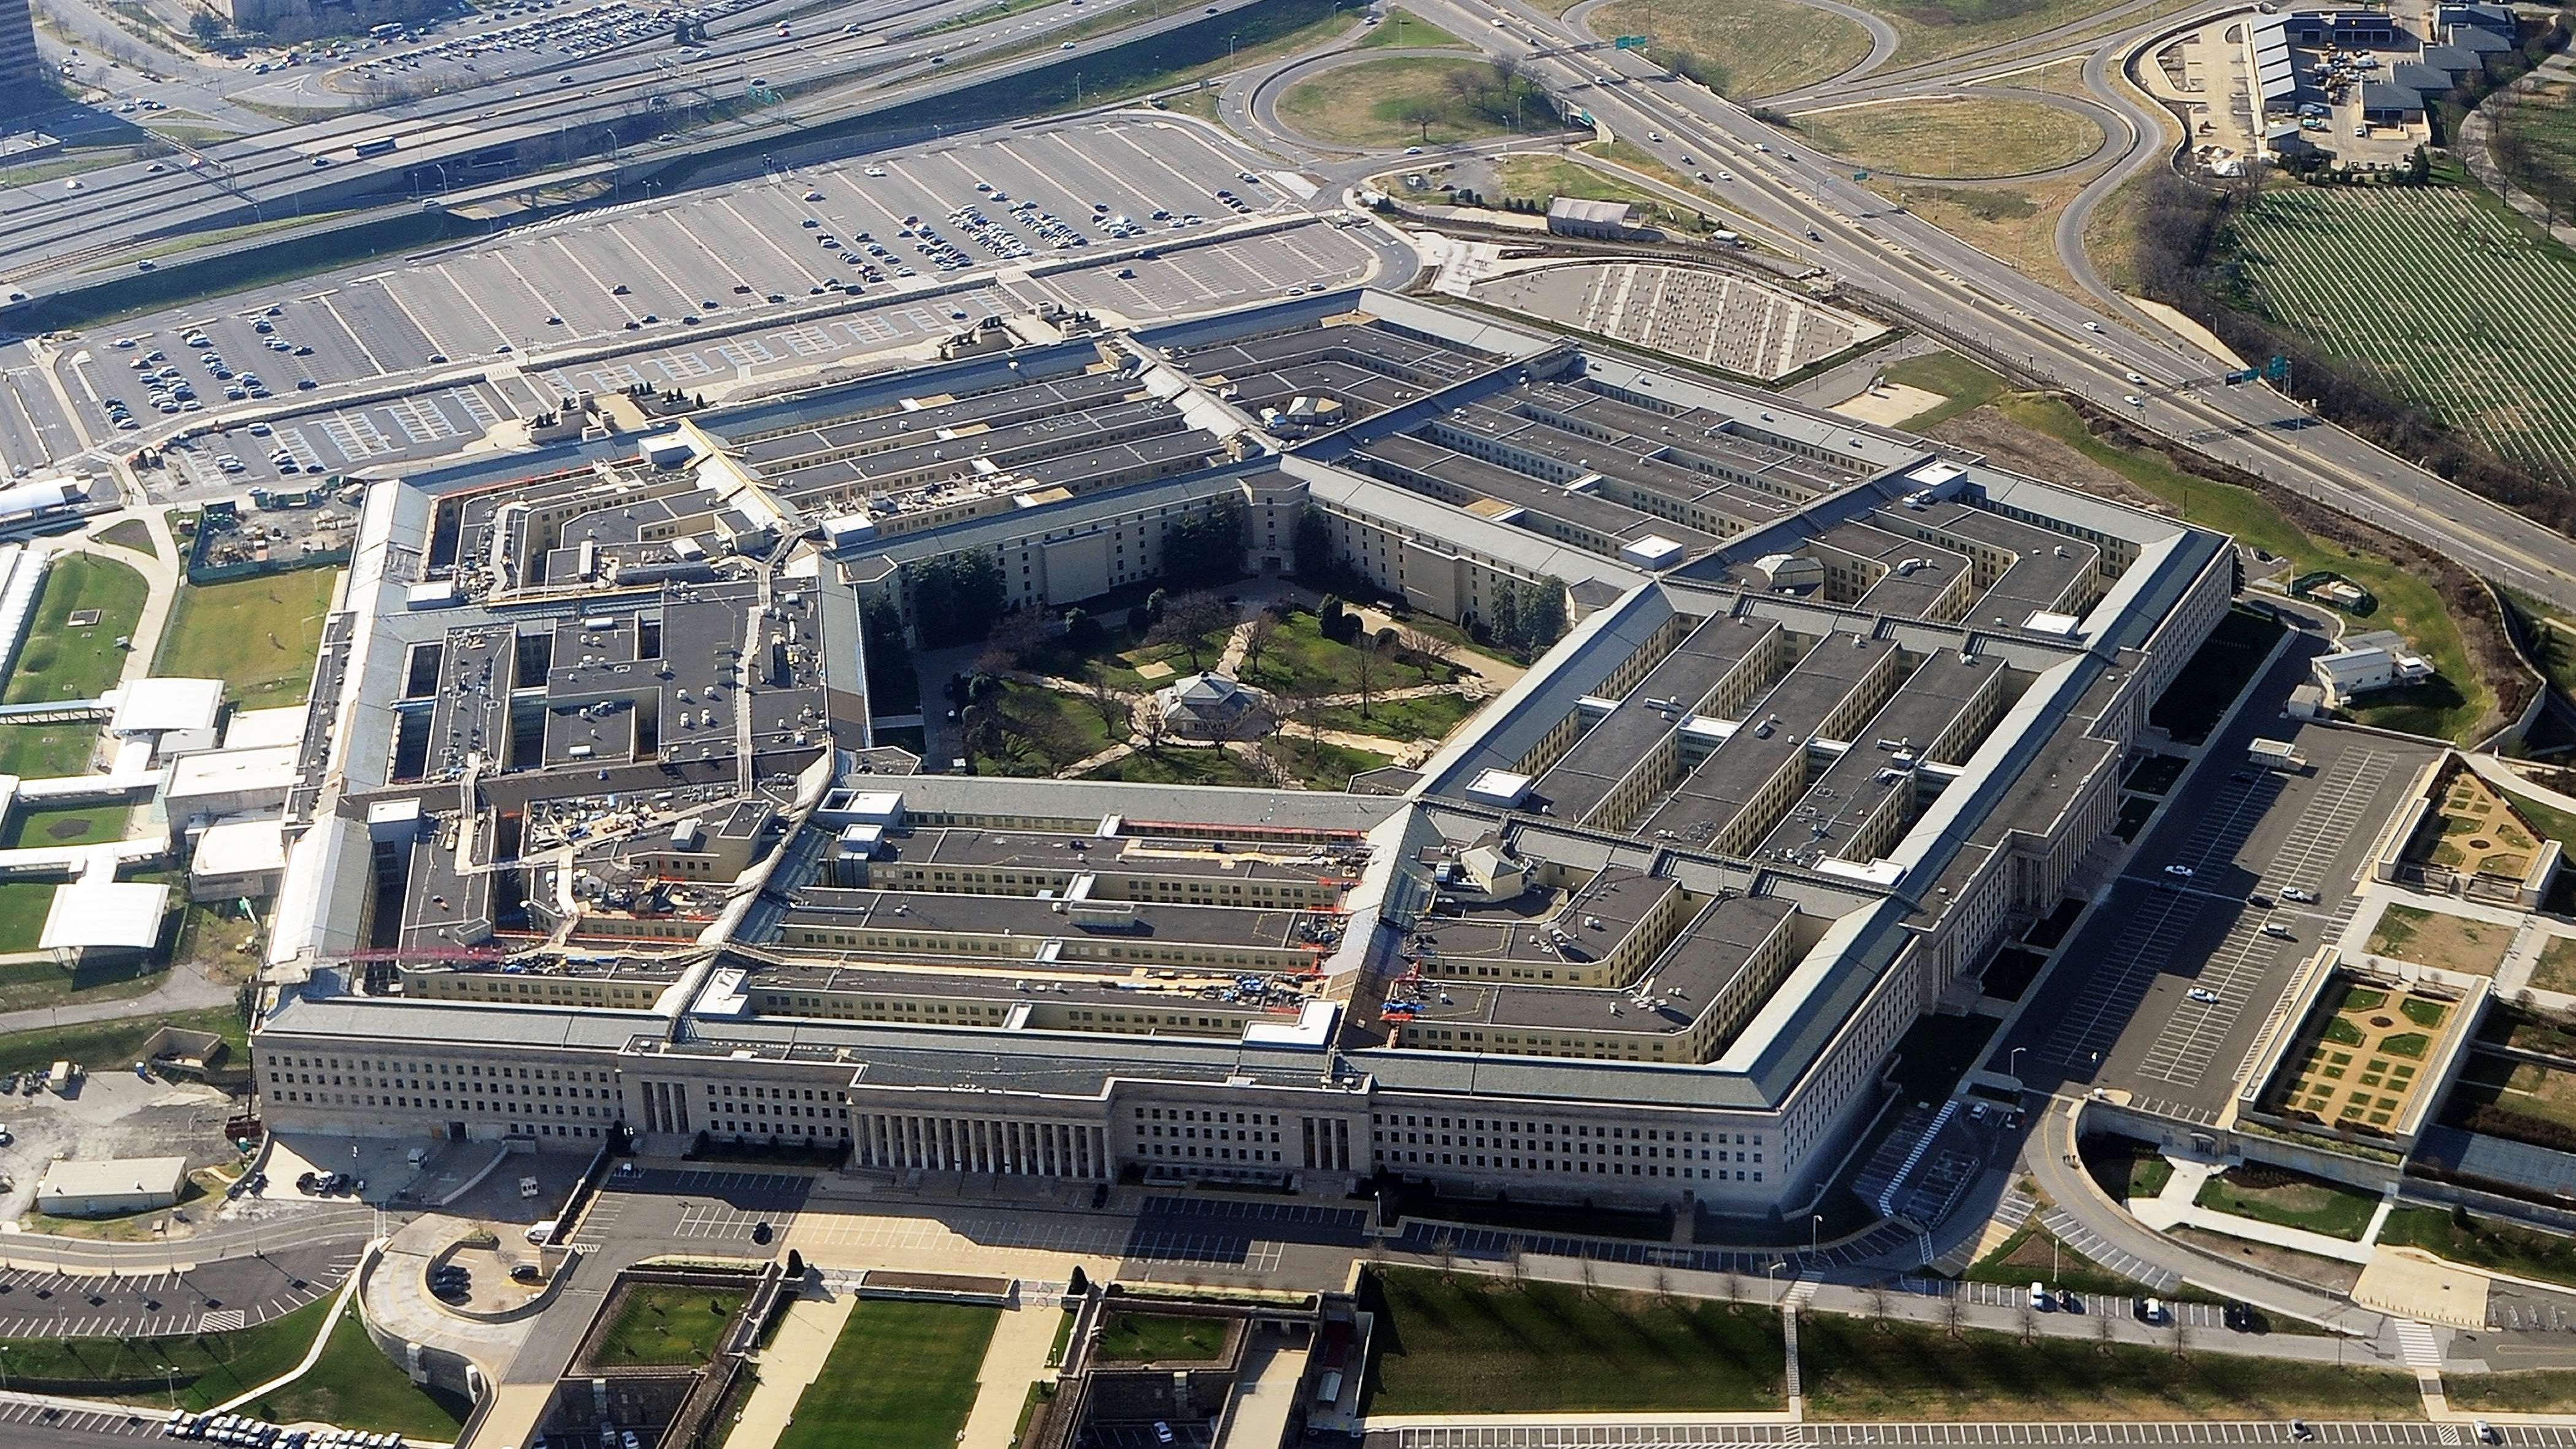 Pentagon aerial